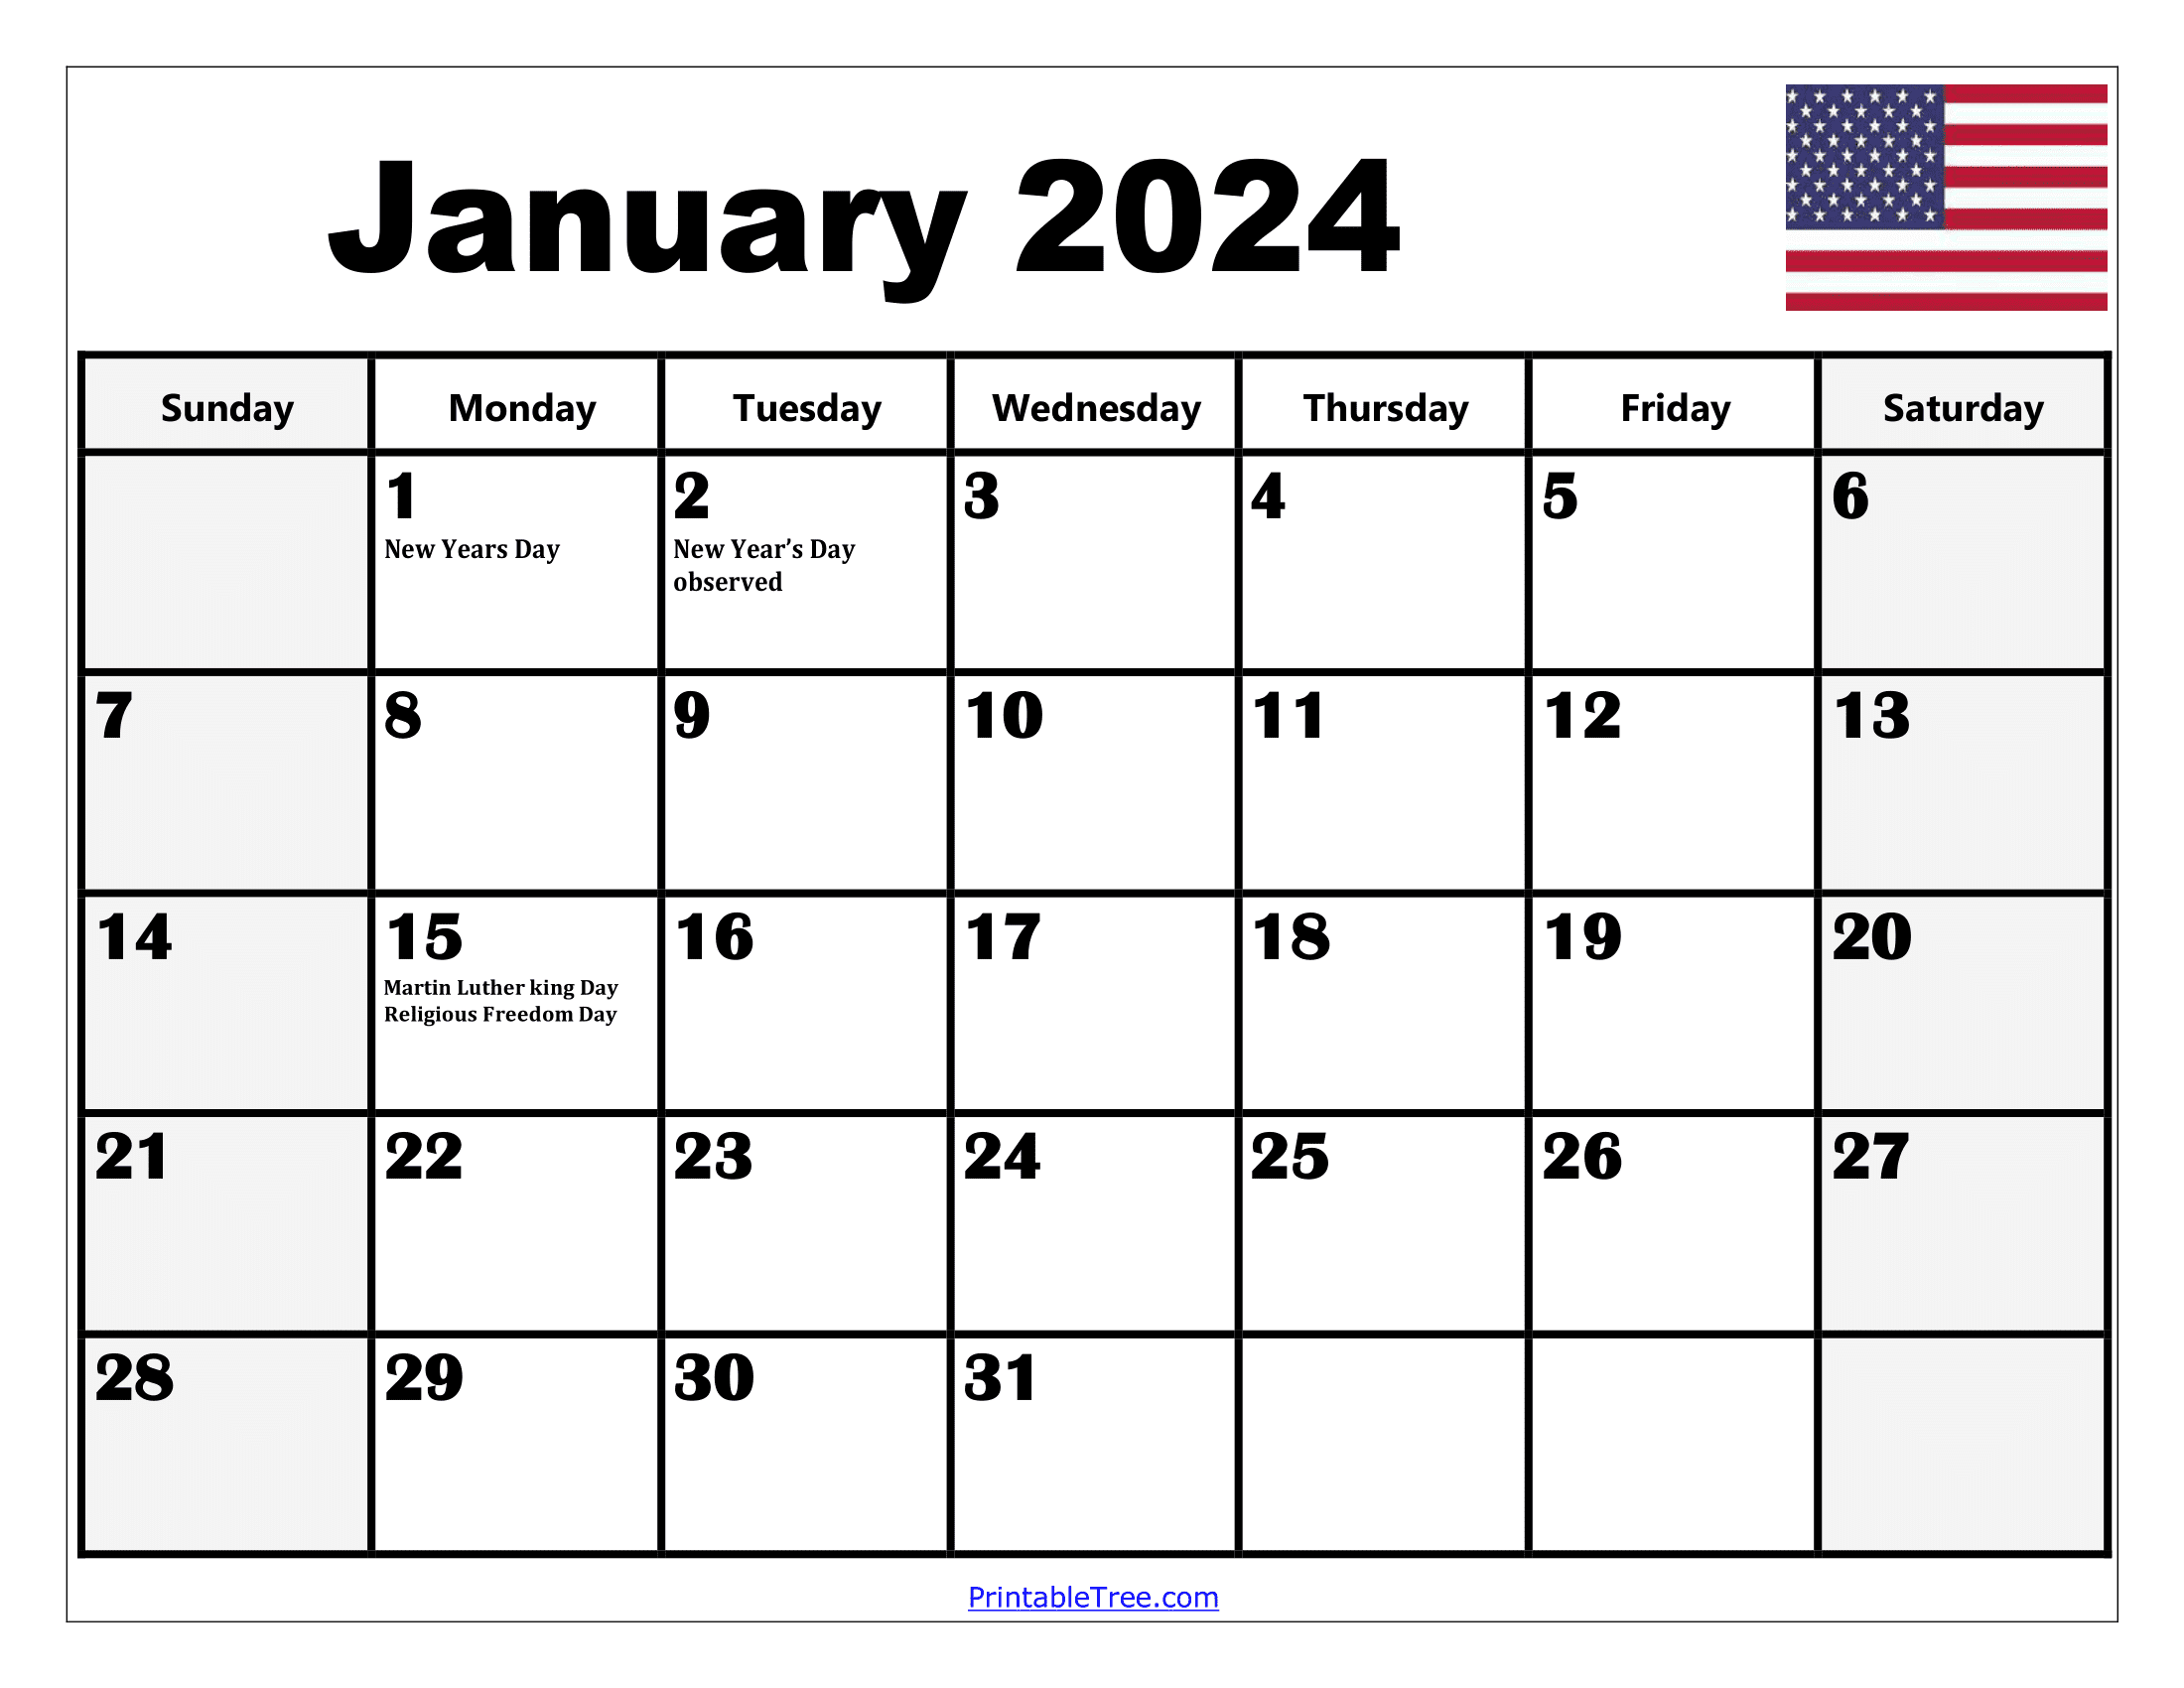 2024 Holiday Calendar Days Free Download Nov 2024 Calendar - Free Printable 2024 Calendar With Holidays By Month